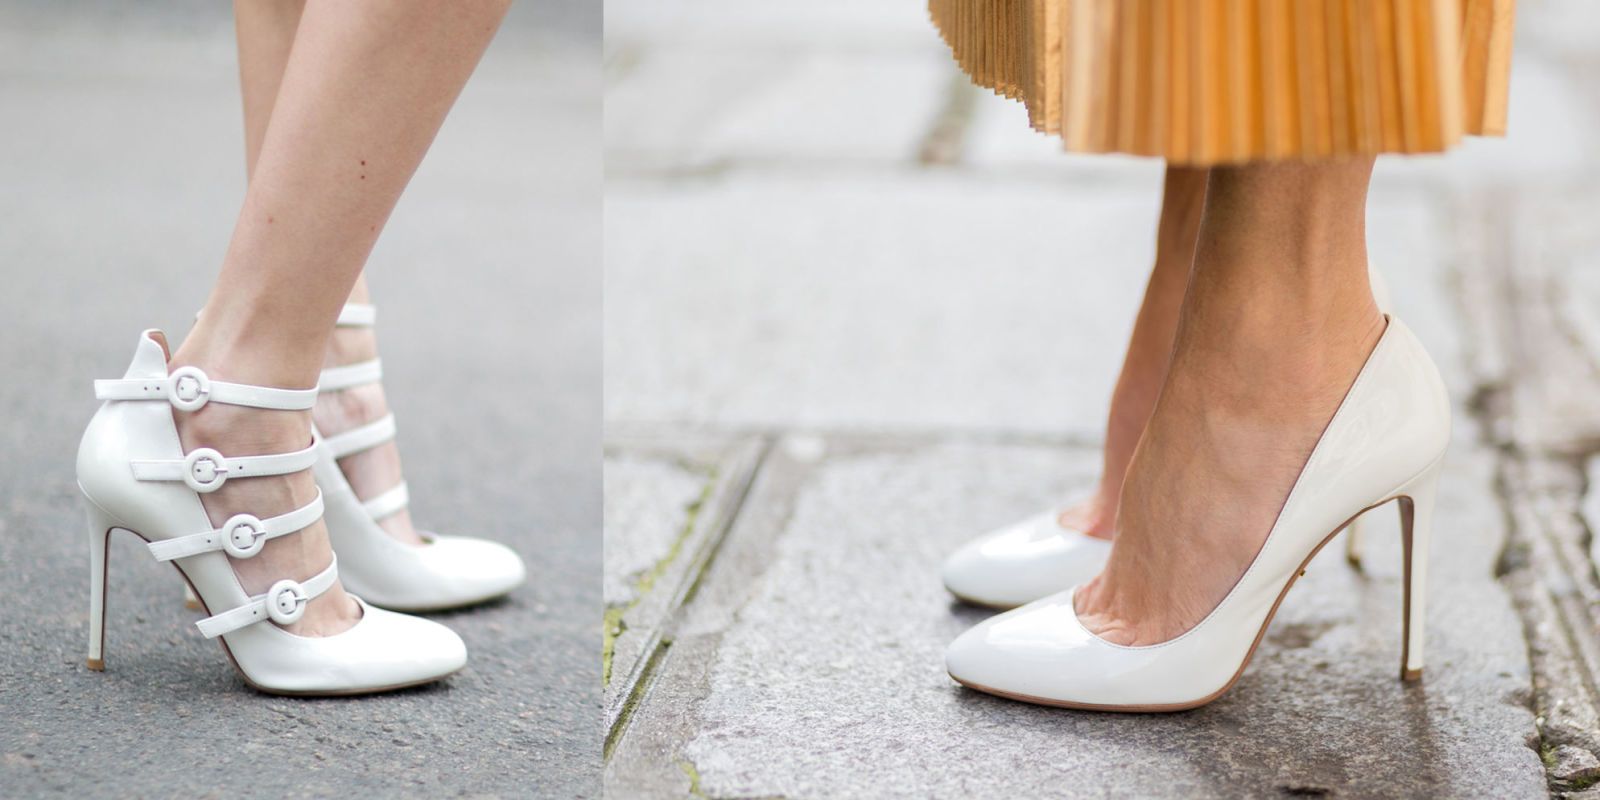 scarpe eleganti bianche donna